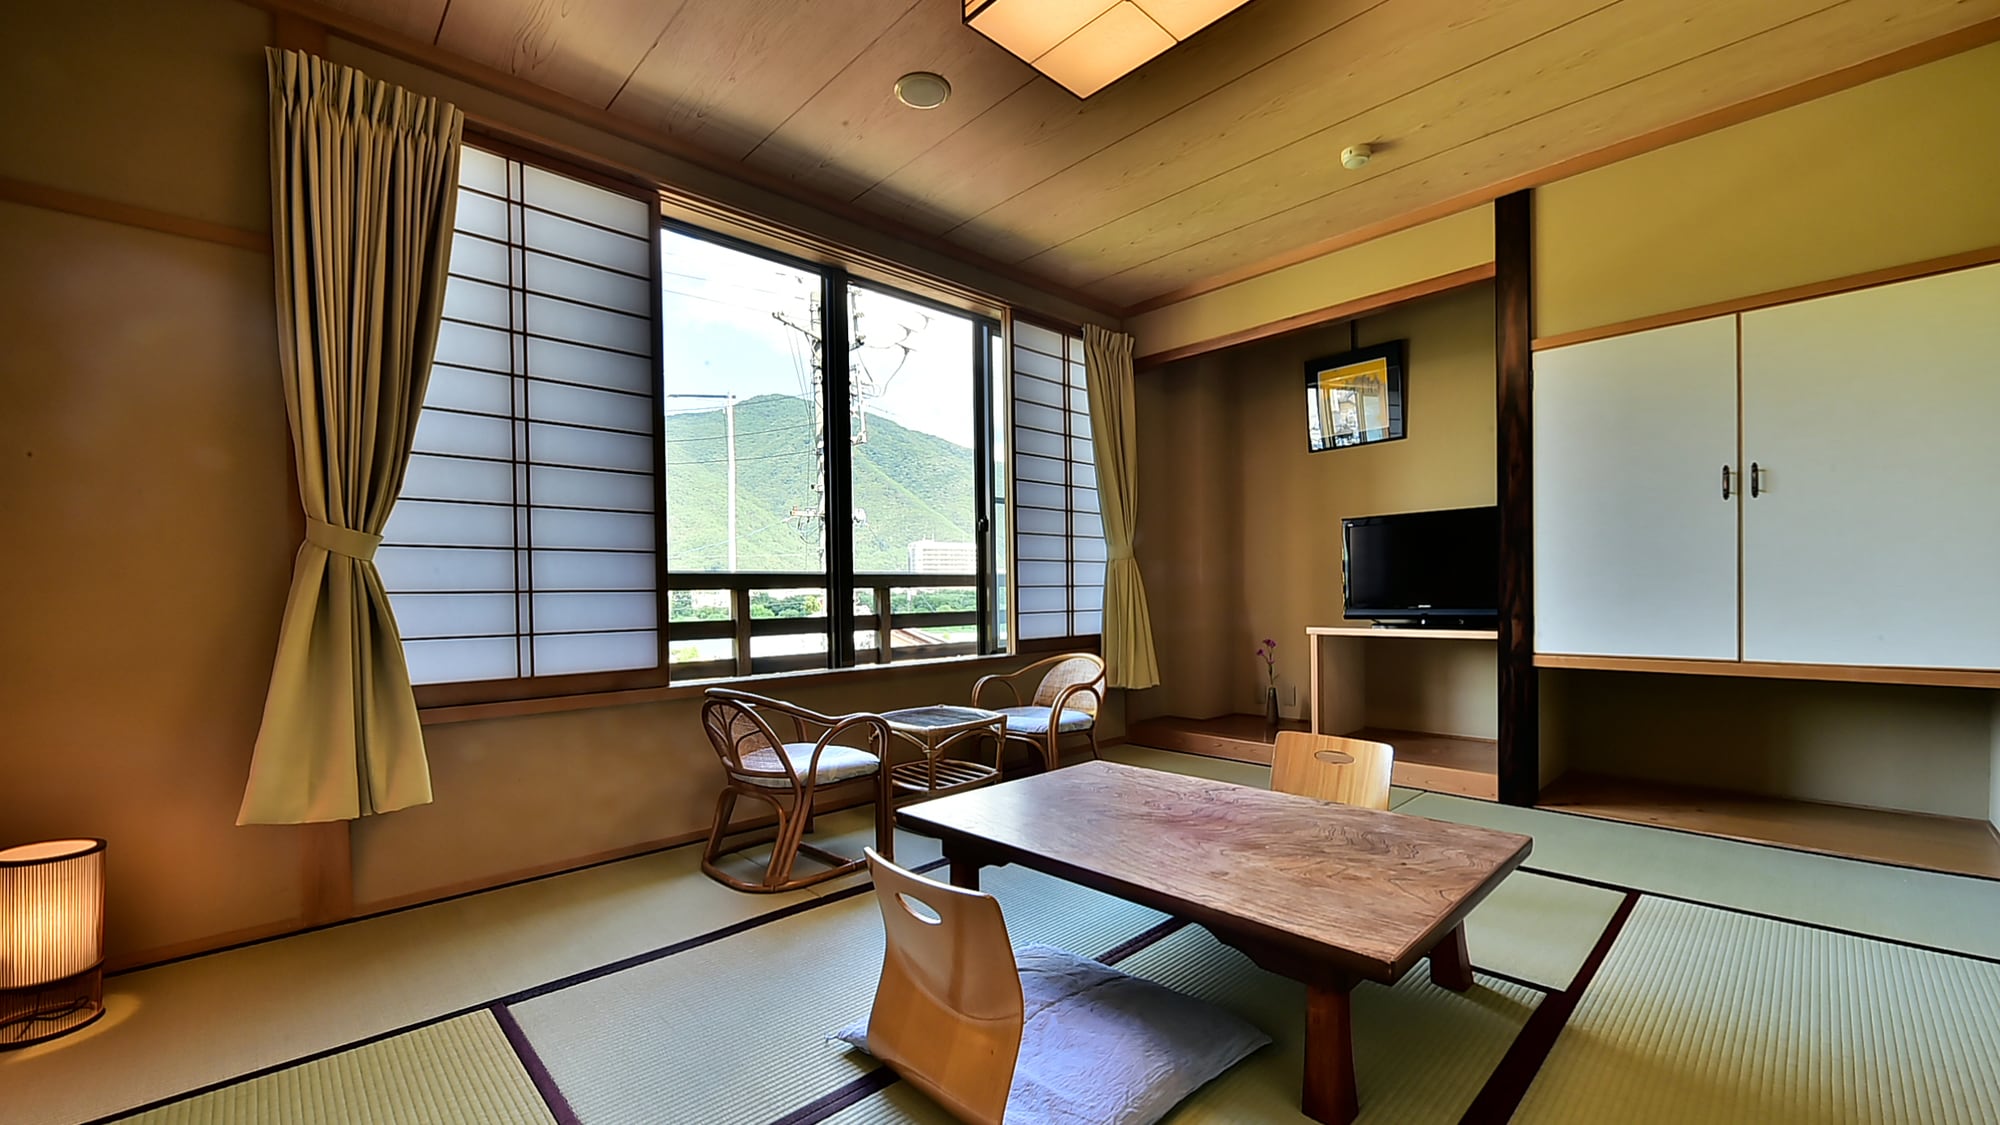 ตัวอย่างห้องสไตล์ญี่ปุ่น-ตะวันตกในอาคารหลัก "โทเซ็นคาคุ" (พื้นที่ห้องสไตล์ญี่ปุ่น)